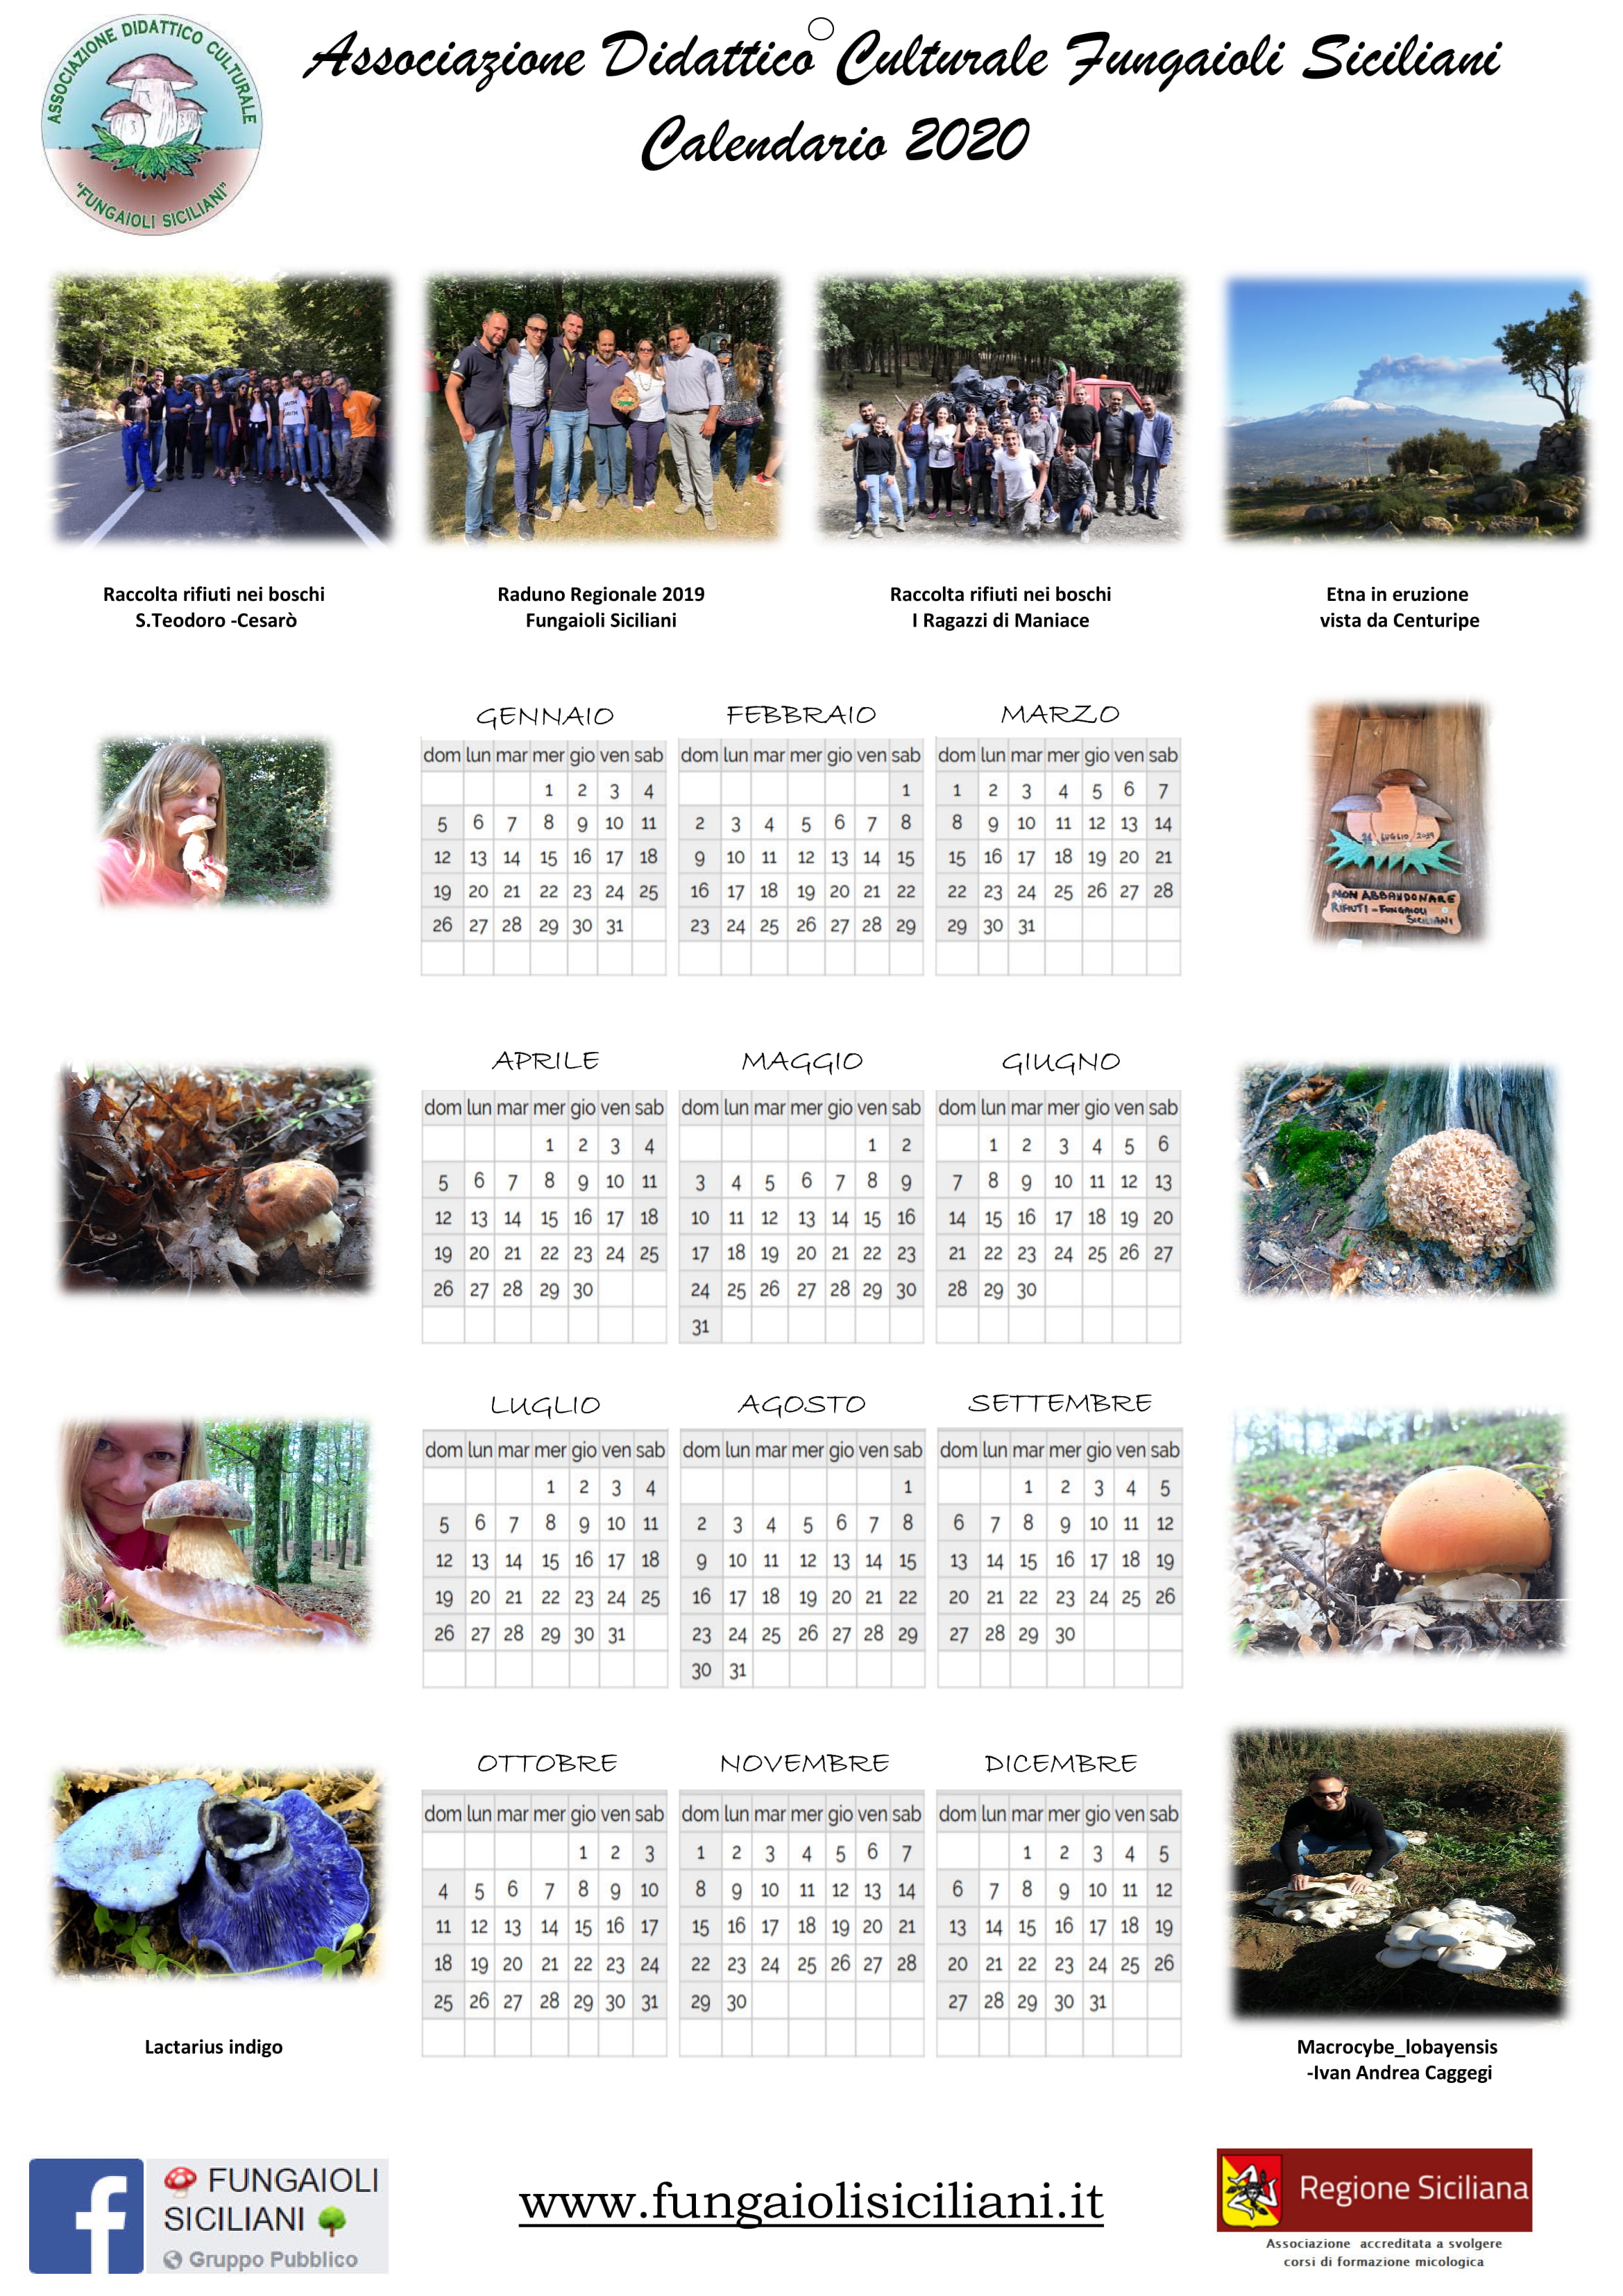 Calendario_2020_-_Rosita_Rugna_4-1.jpg - 917,30 kB